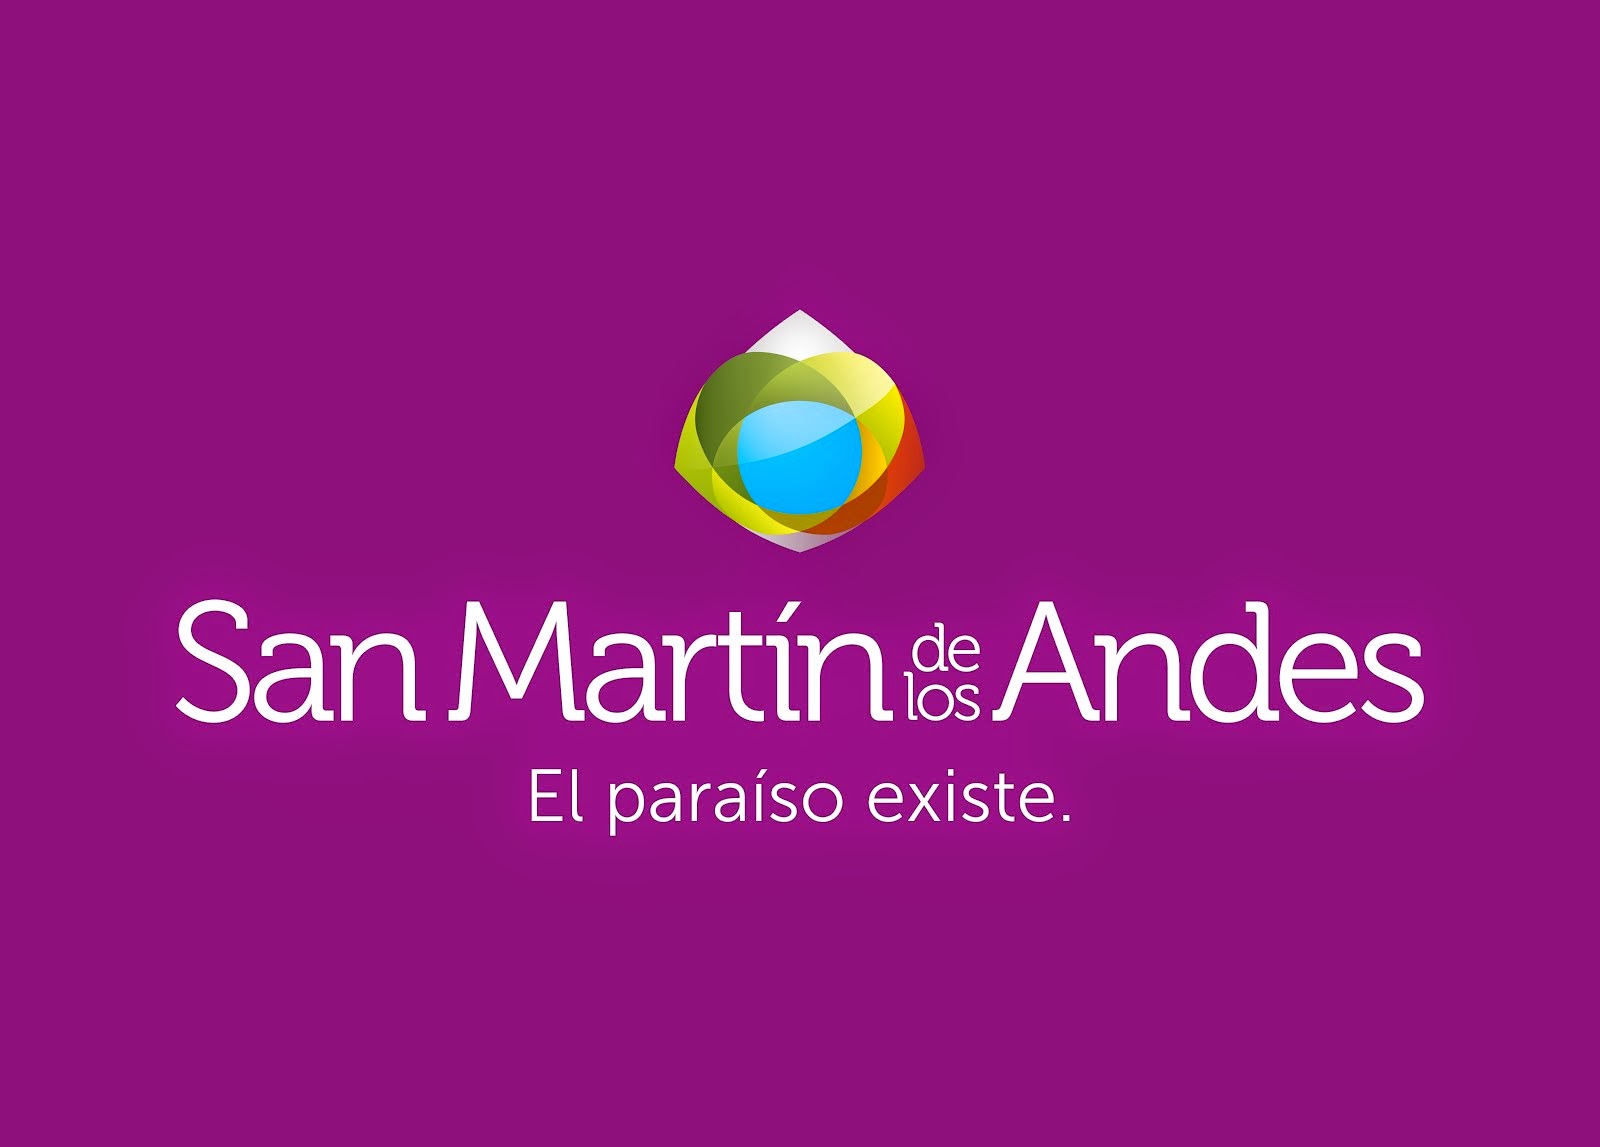 SAN MARTÍN DE LOS ANDES